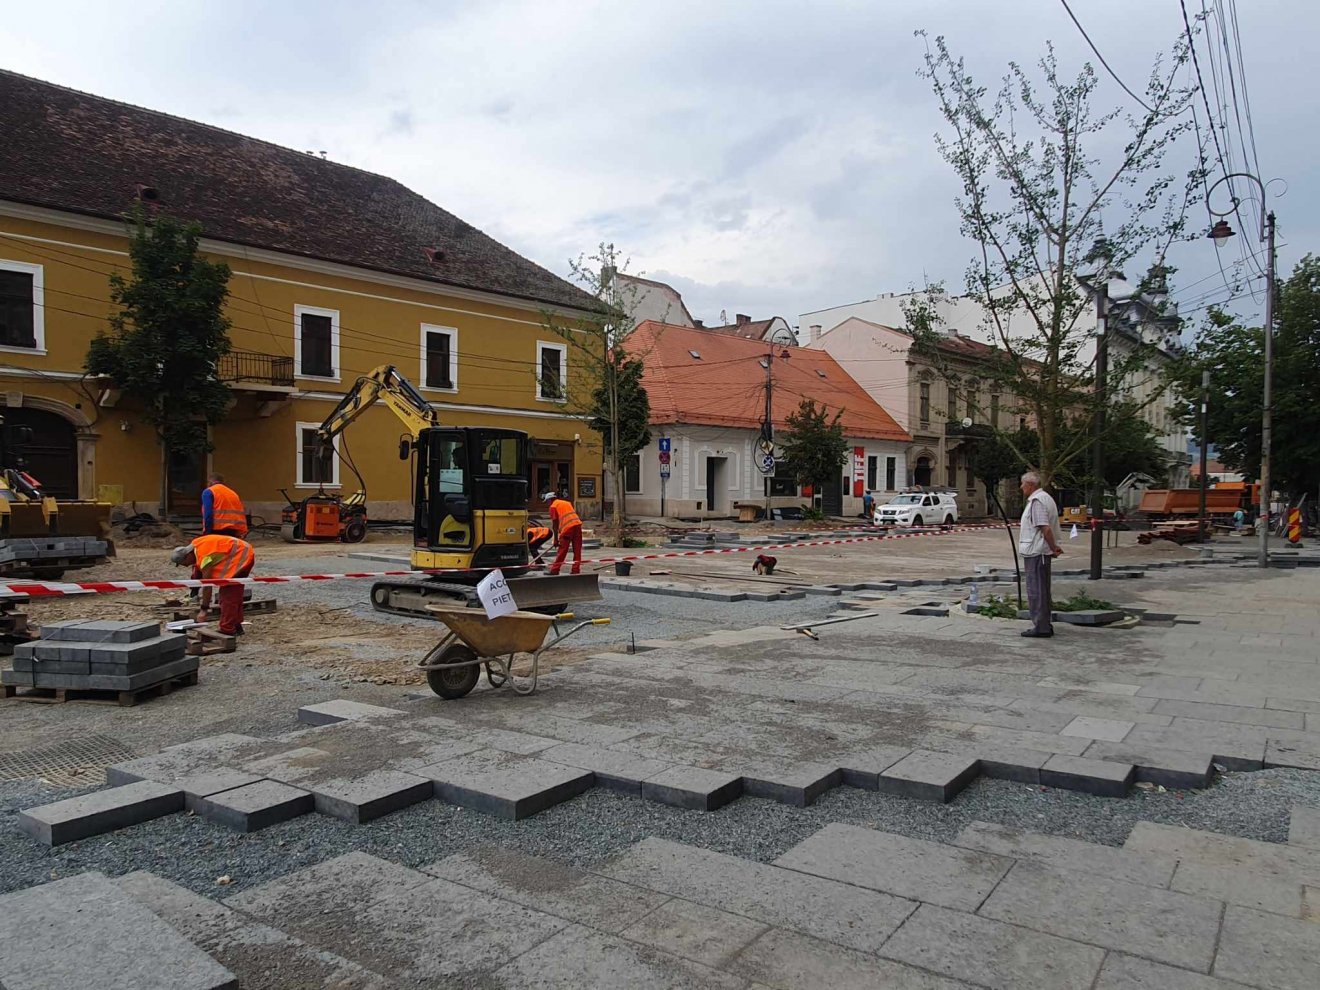 Gyalogosövezetté alakul Kolozsvár történelmi központjának több ikonikus utcája